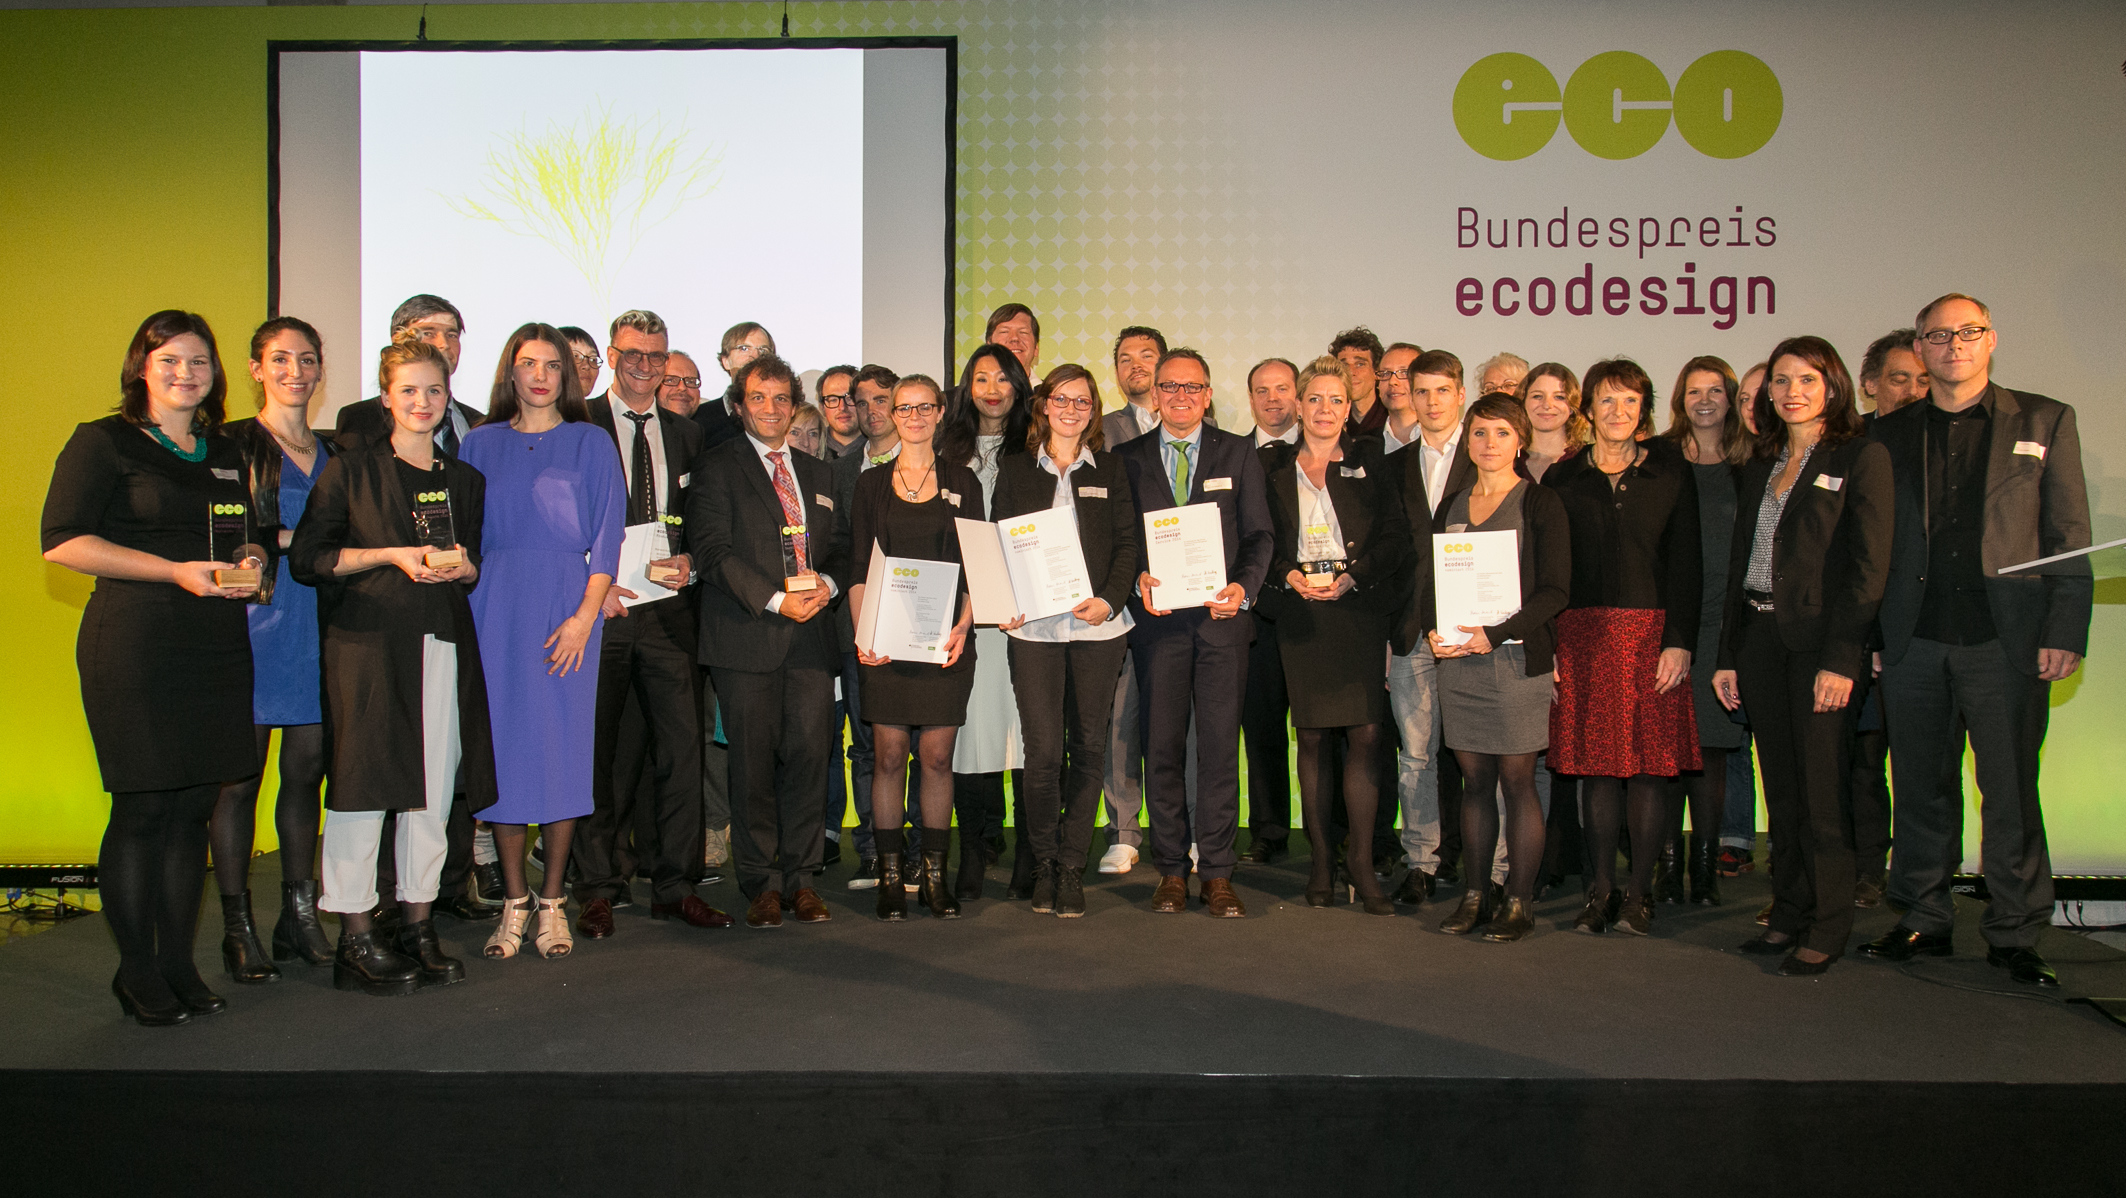 Bundespreis Ecodesign 2014 Gruppenbild mit allen Preisträgerinnen und Preisträgern